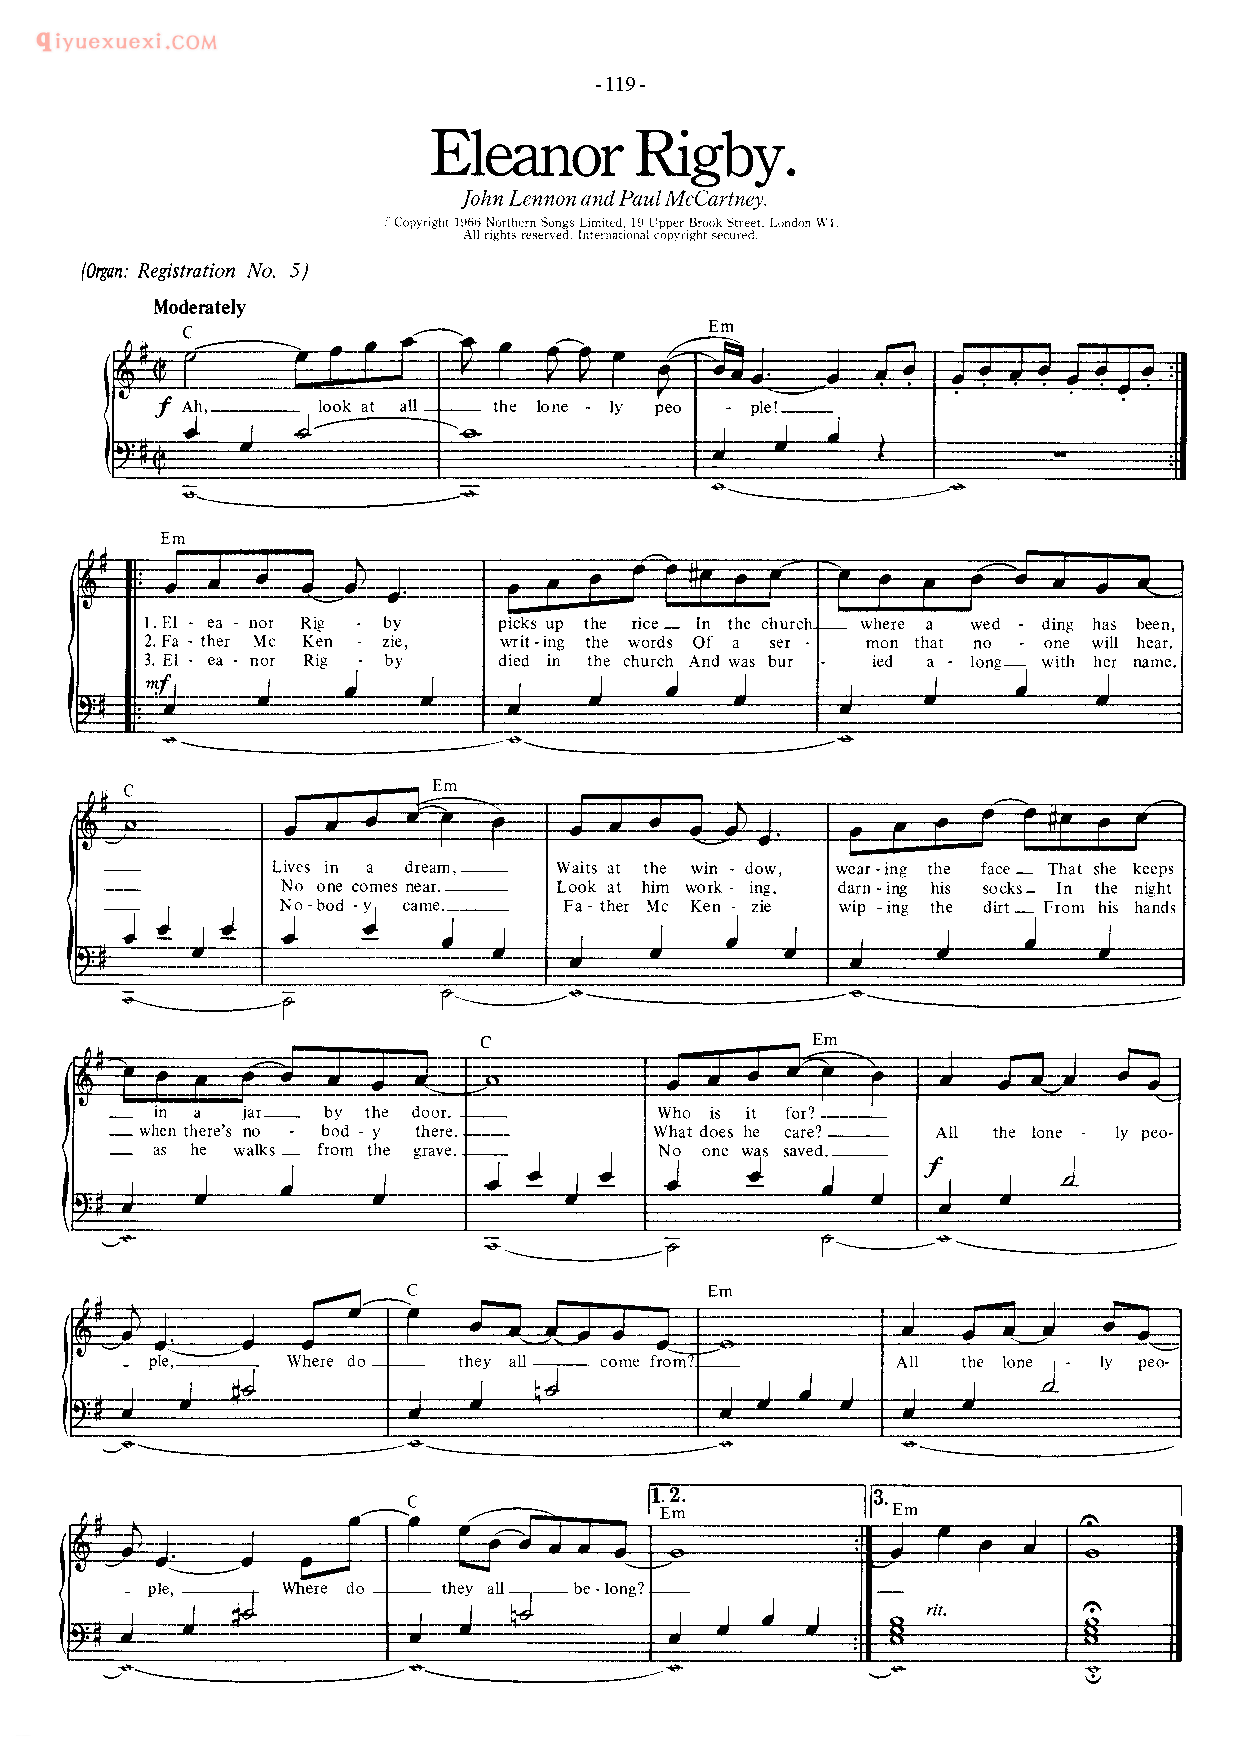 披头士/甲壳虫乐队钢琴乐曲谱《Eleanor Rigby》英国摇滚乐队